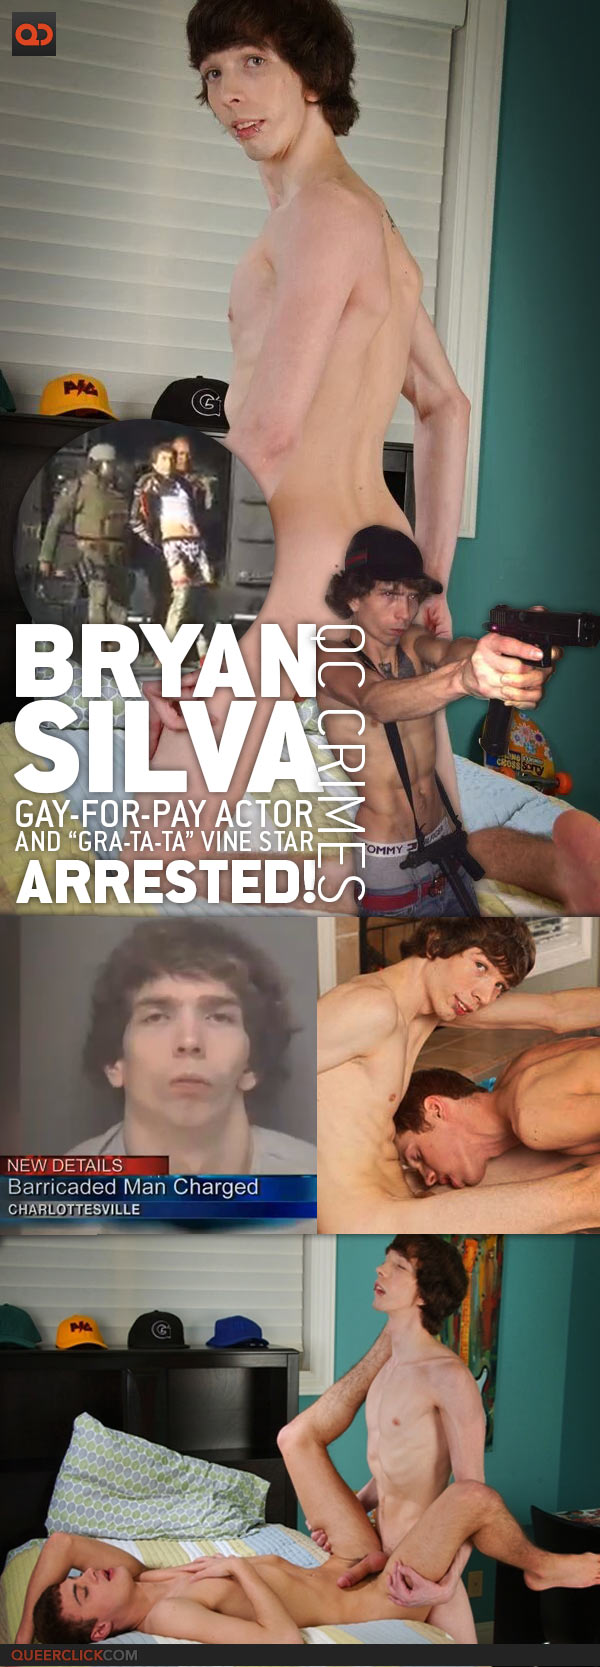 Bryan silva porn name